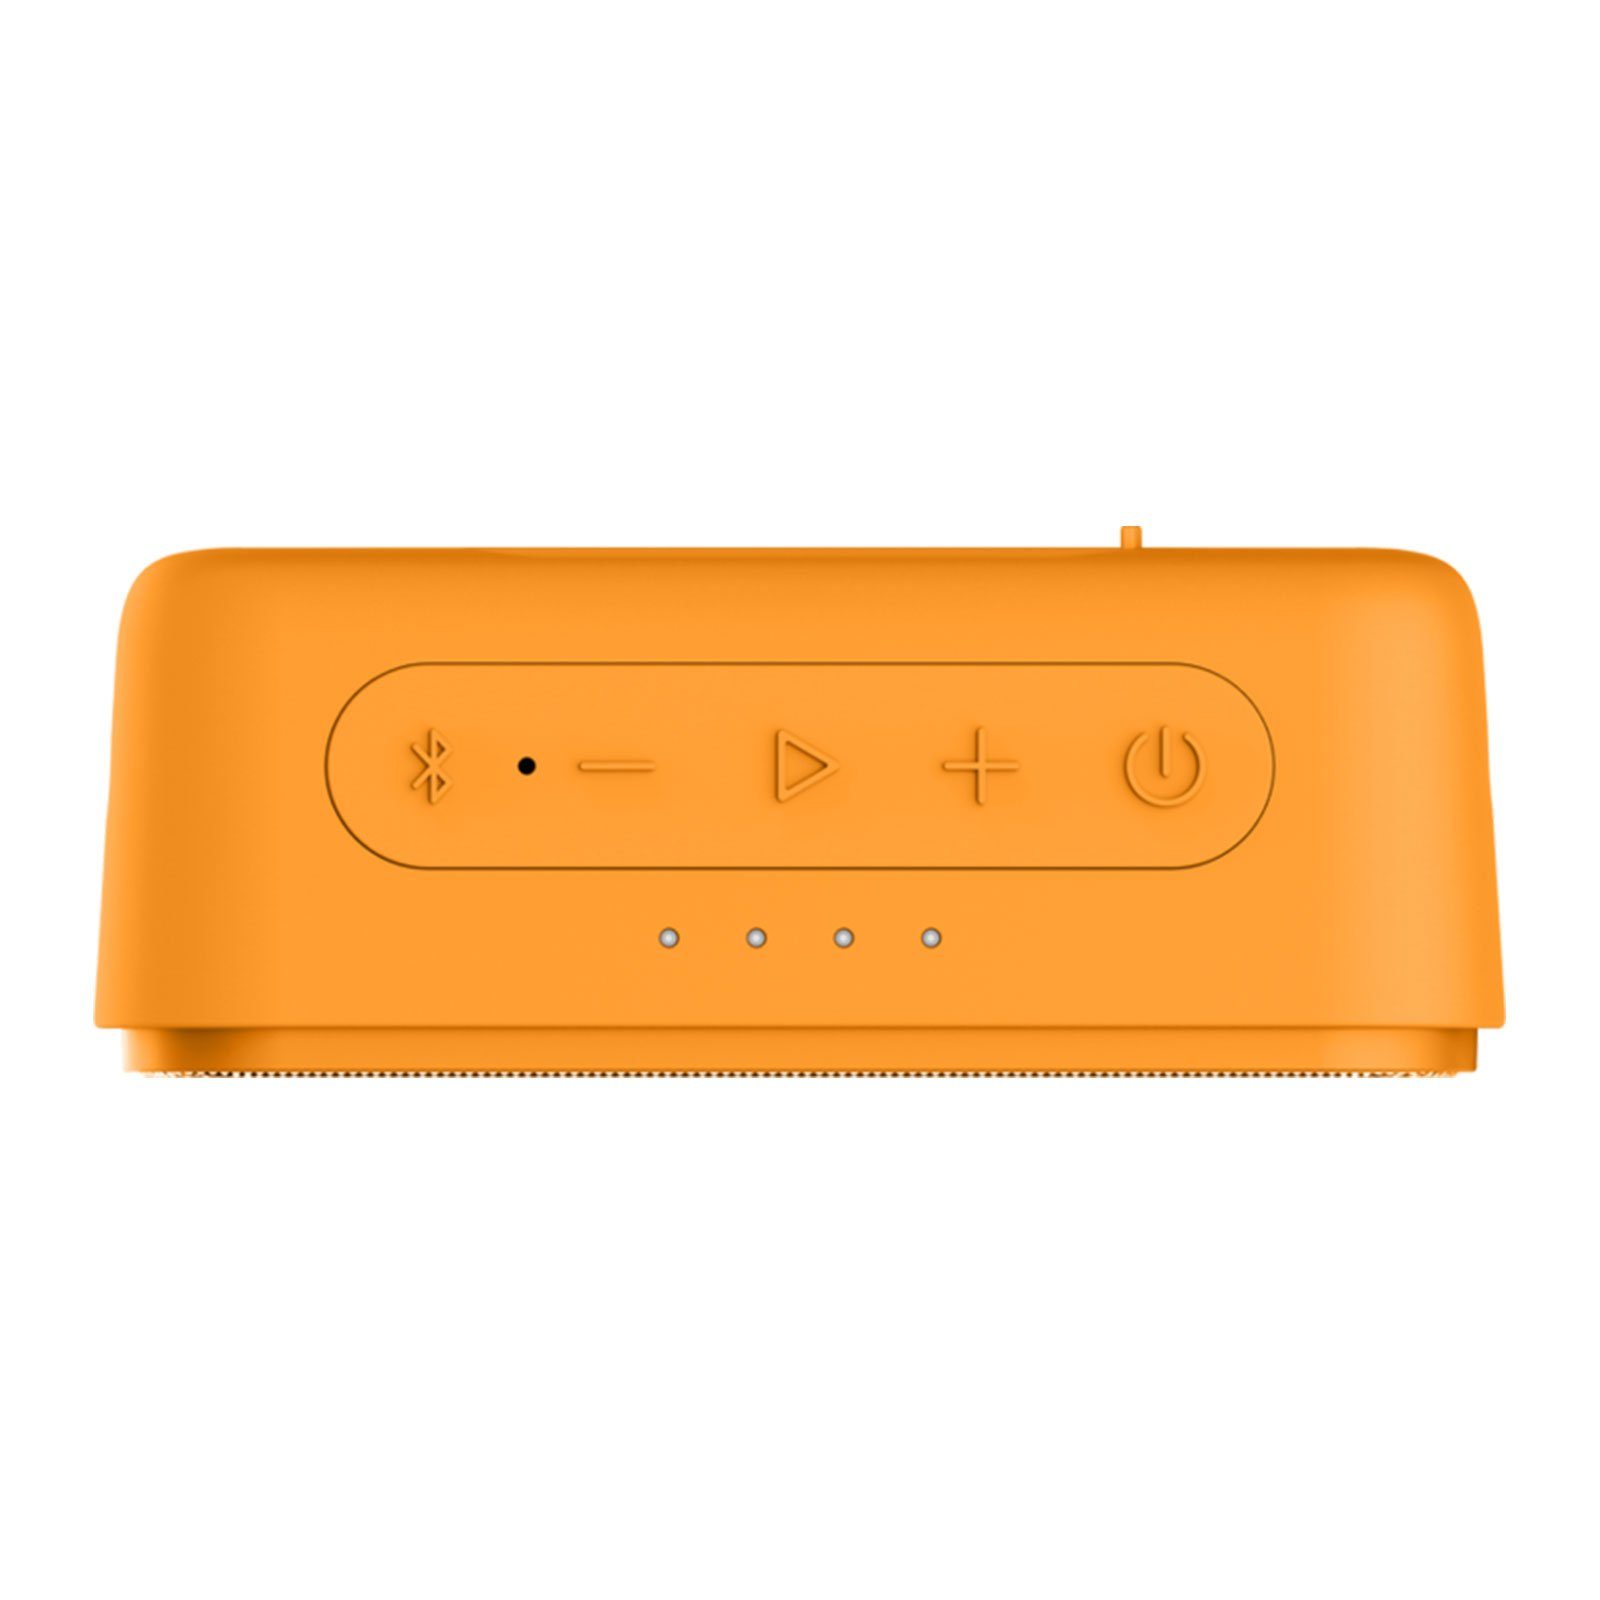 Grundig GBT JAM Lautsprecher Bluetooth-Lautsprecher (3.5 W) Orange